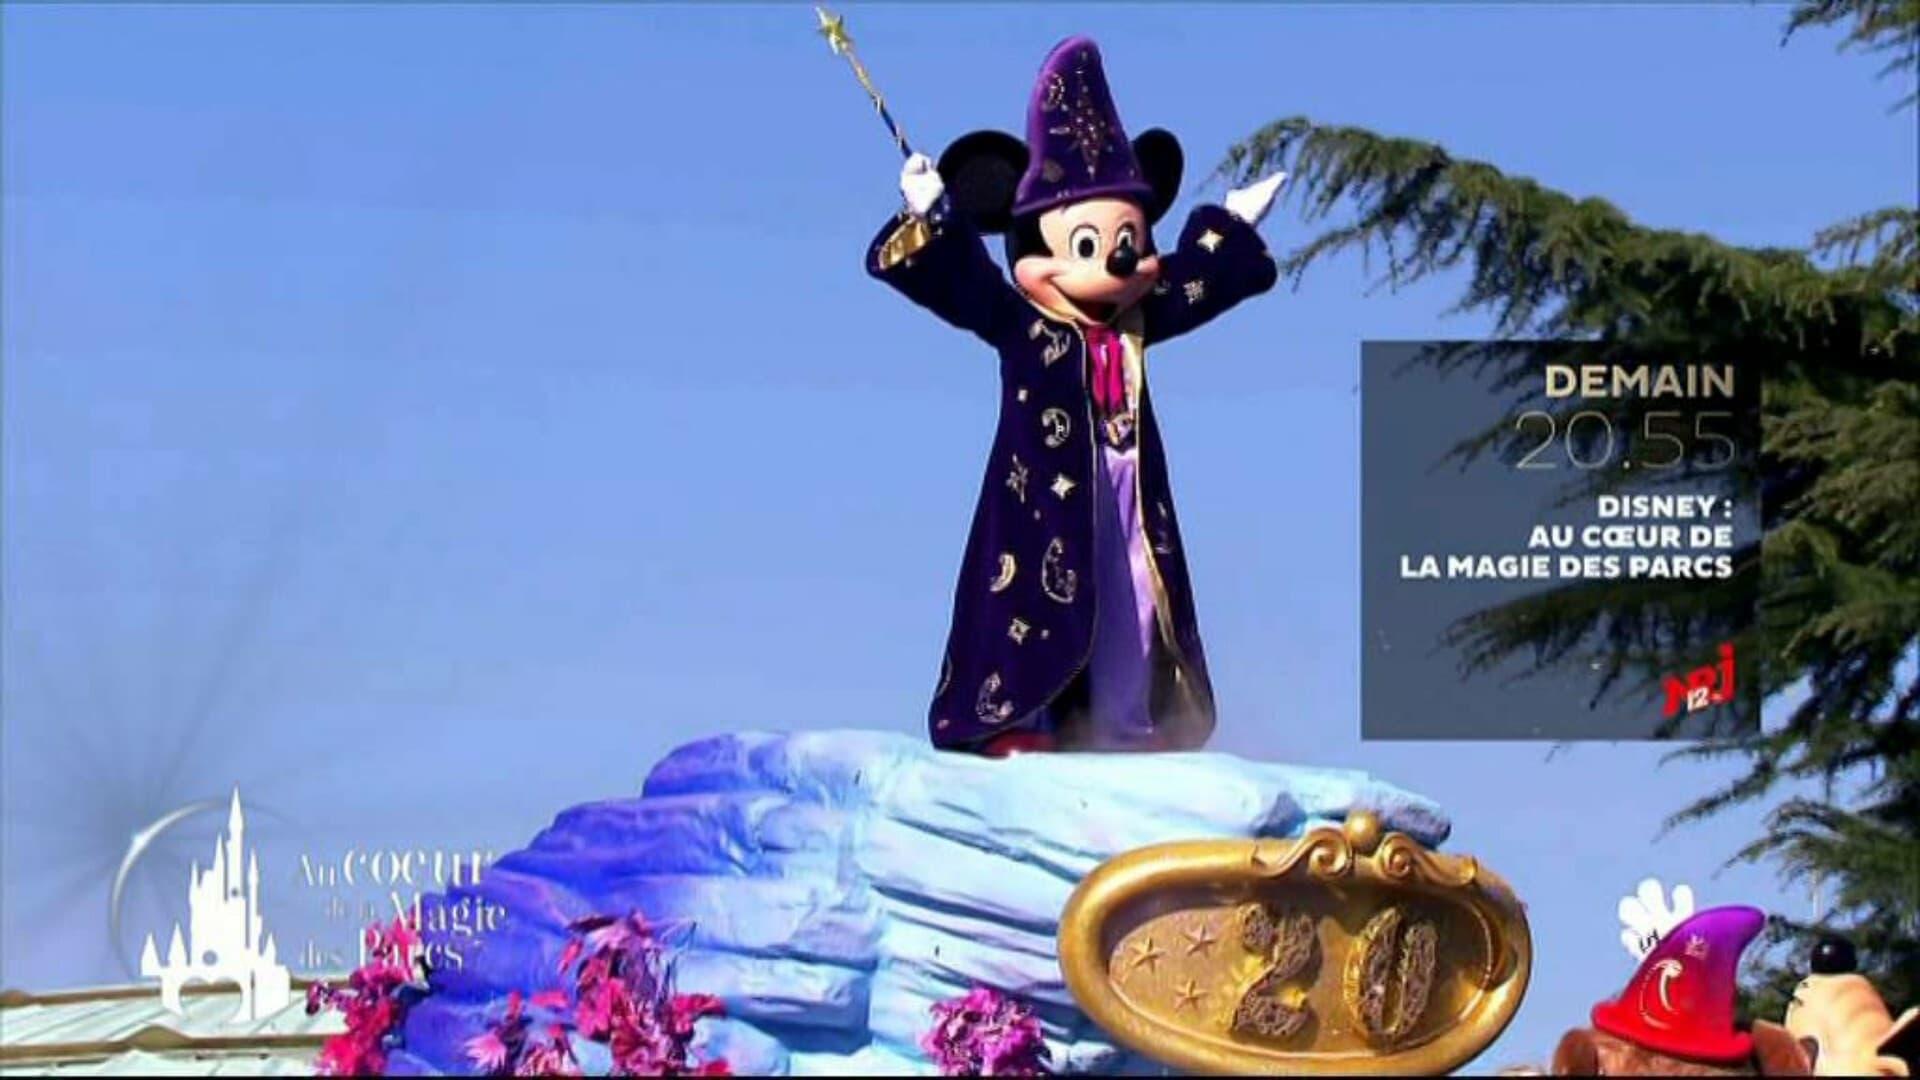 Disney : Au Cœur de la Magie des Parcs backdrop